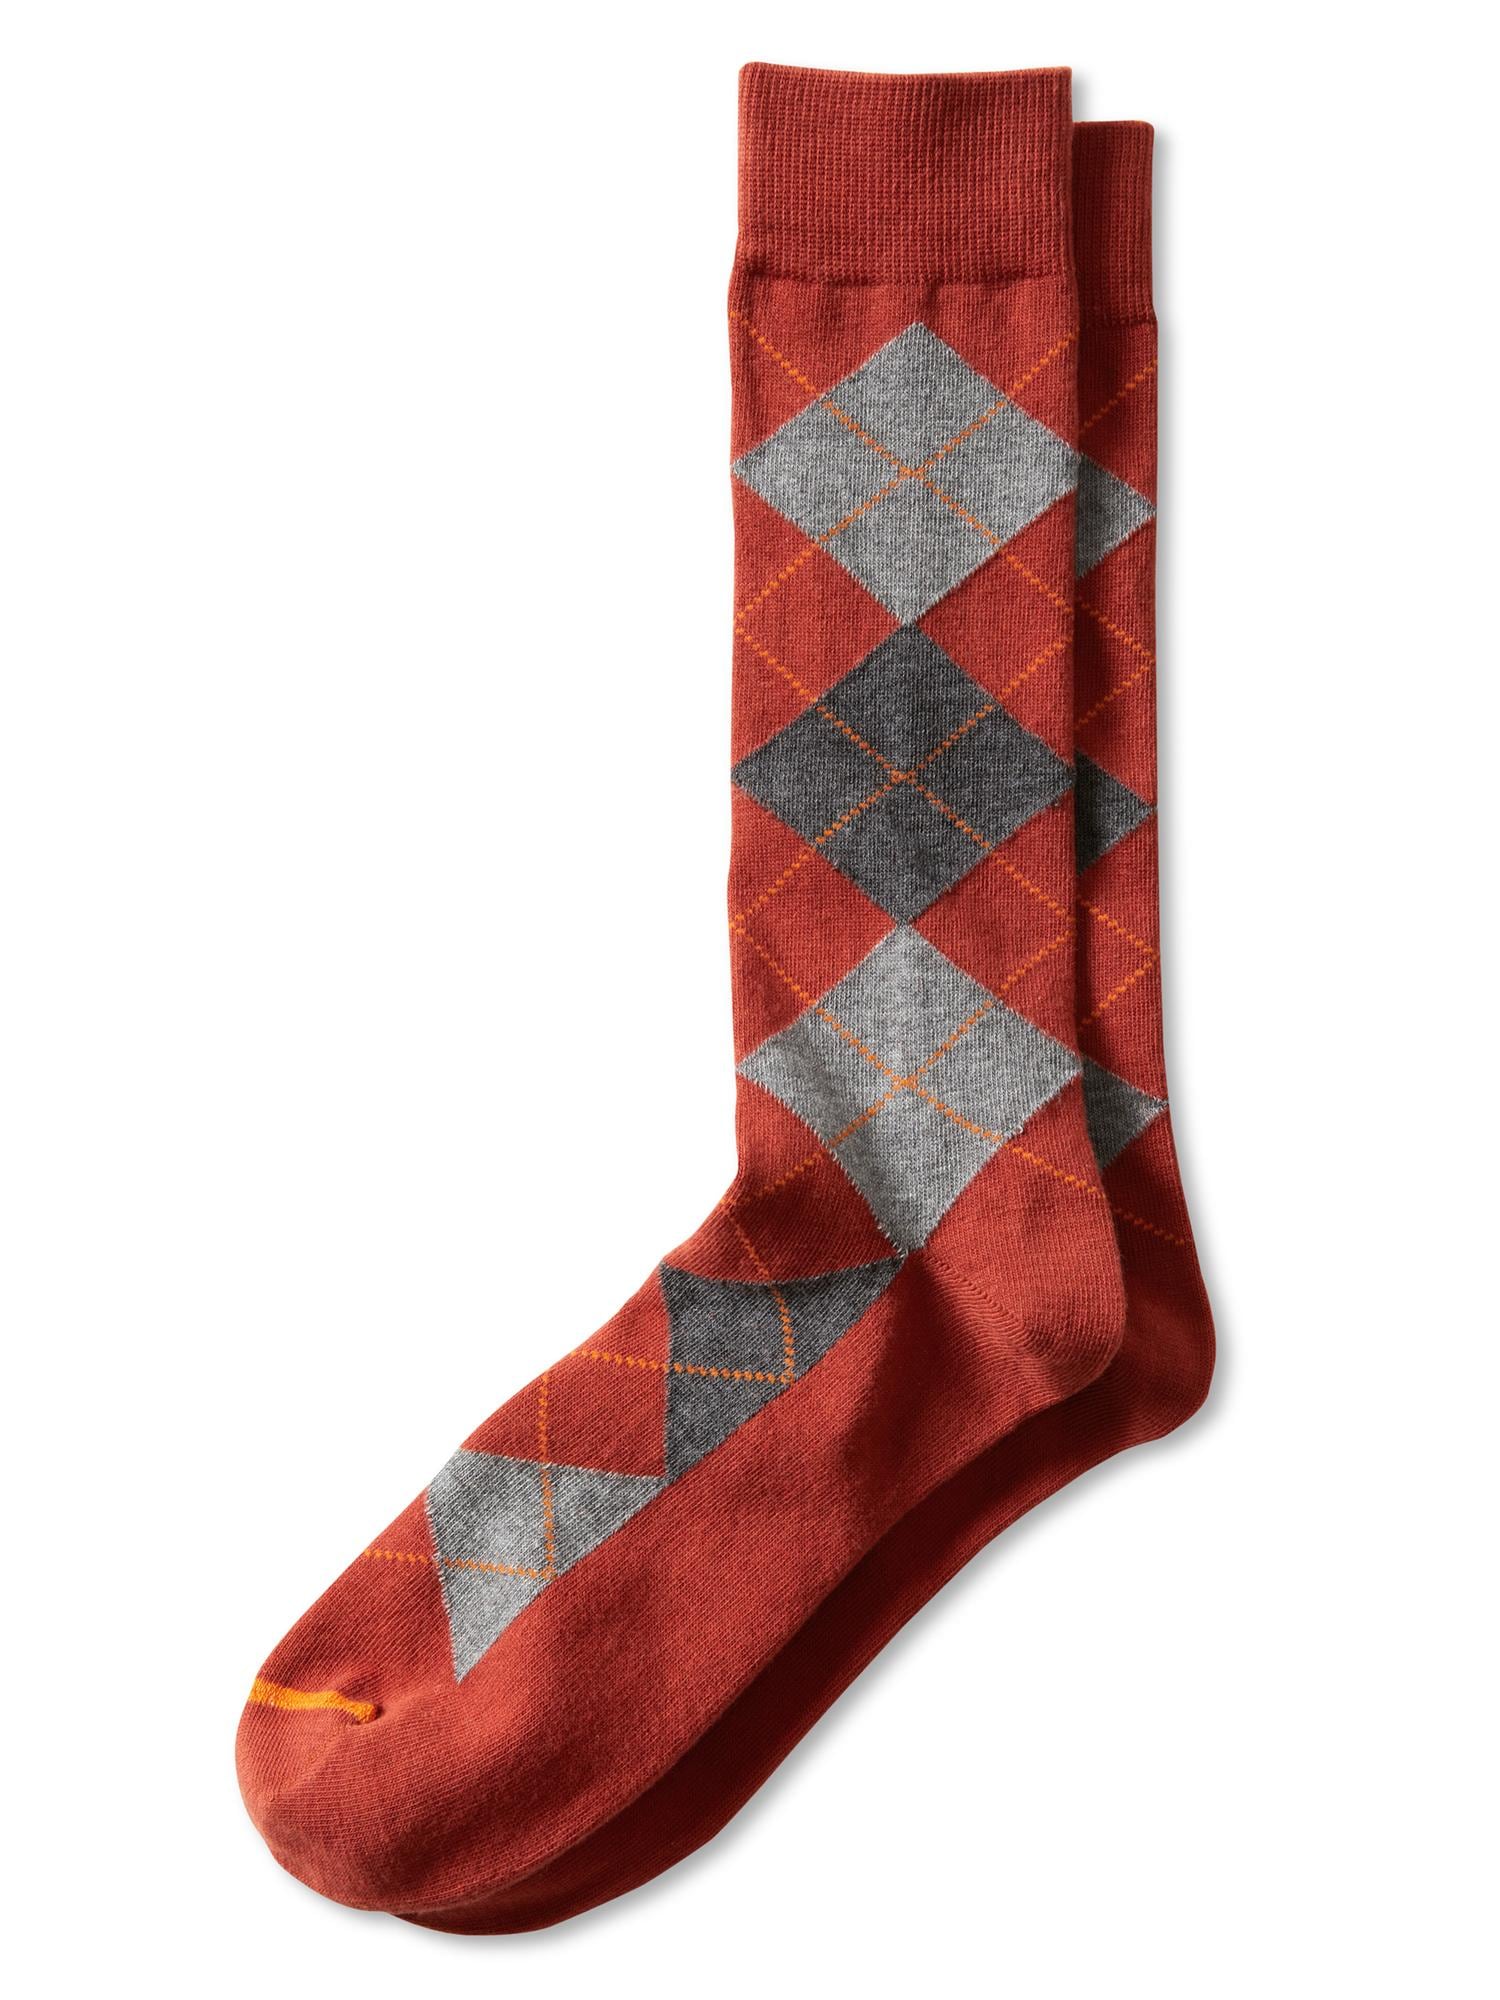 Pima cotton multi-argyle sock